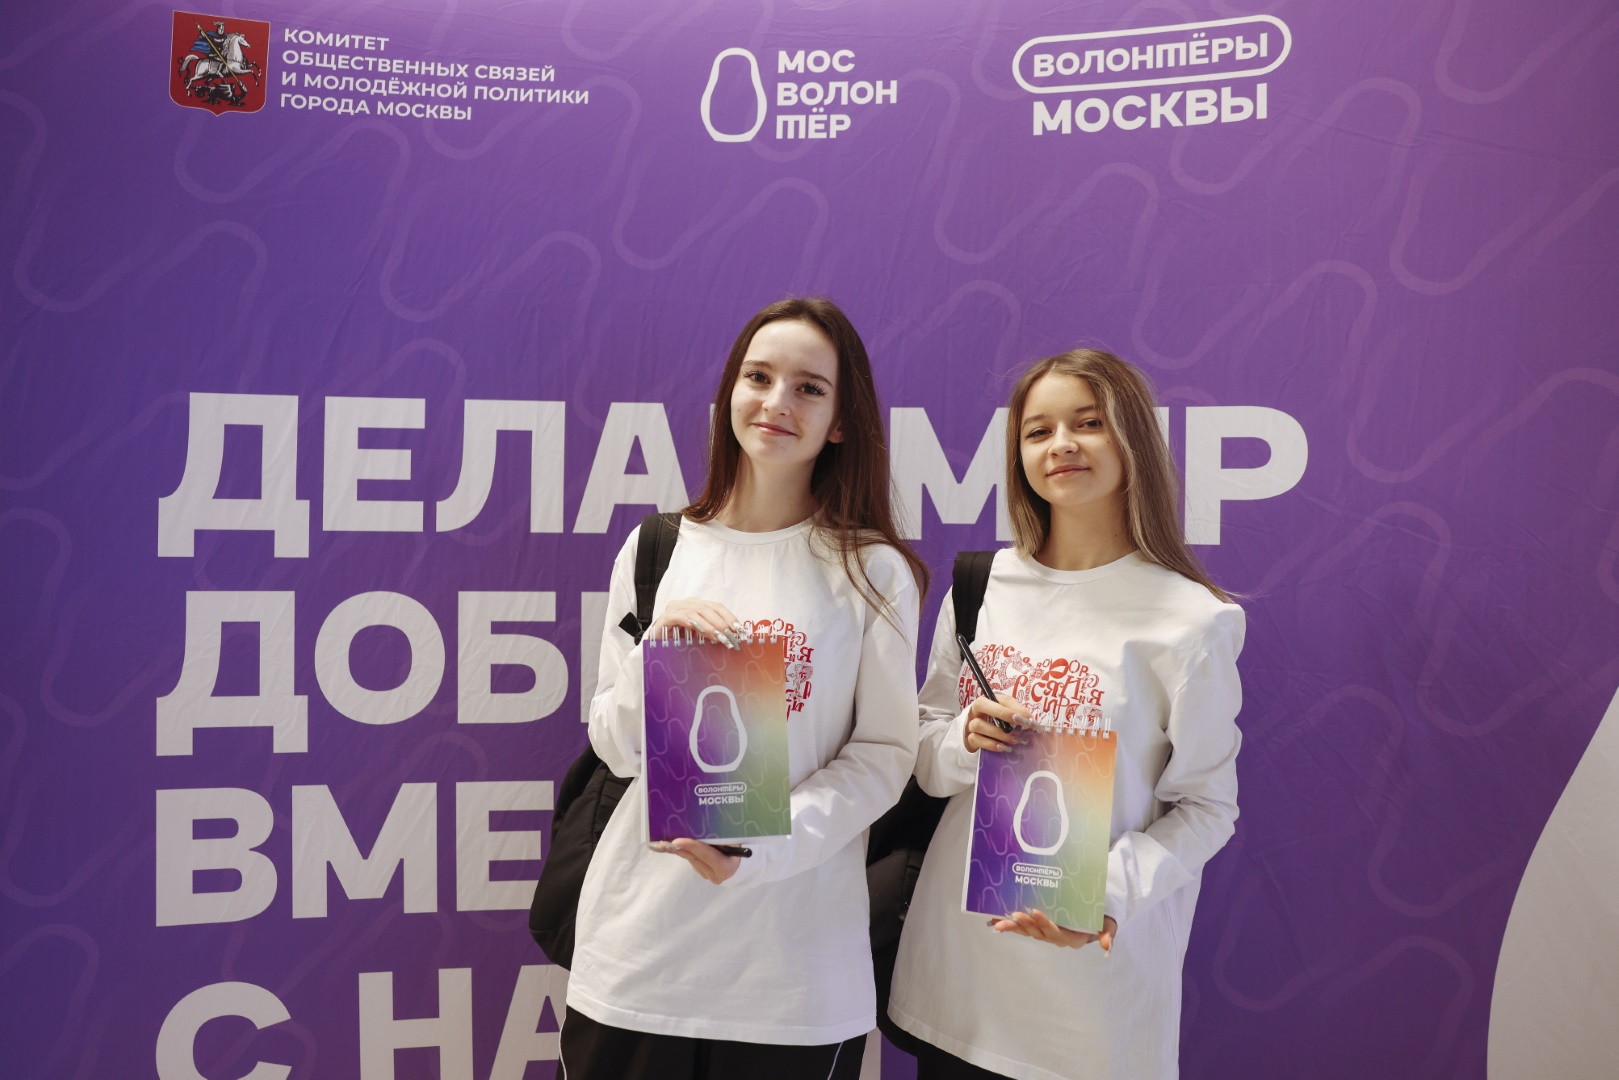 Наталья Сергунина: в Москве стартуют весенние обучающие программы для волонтеров, фото